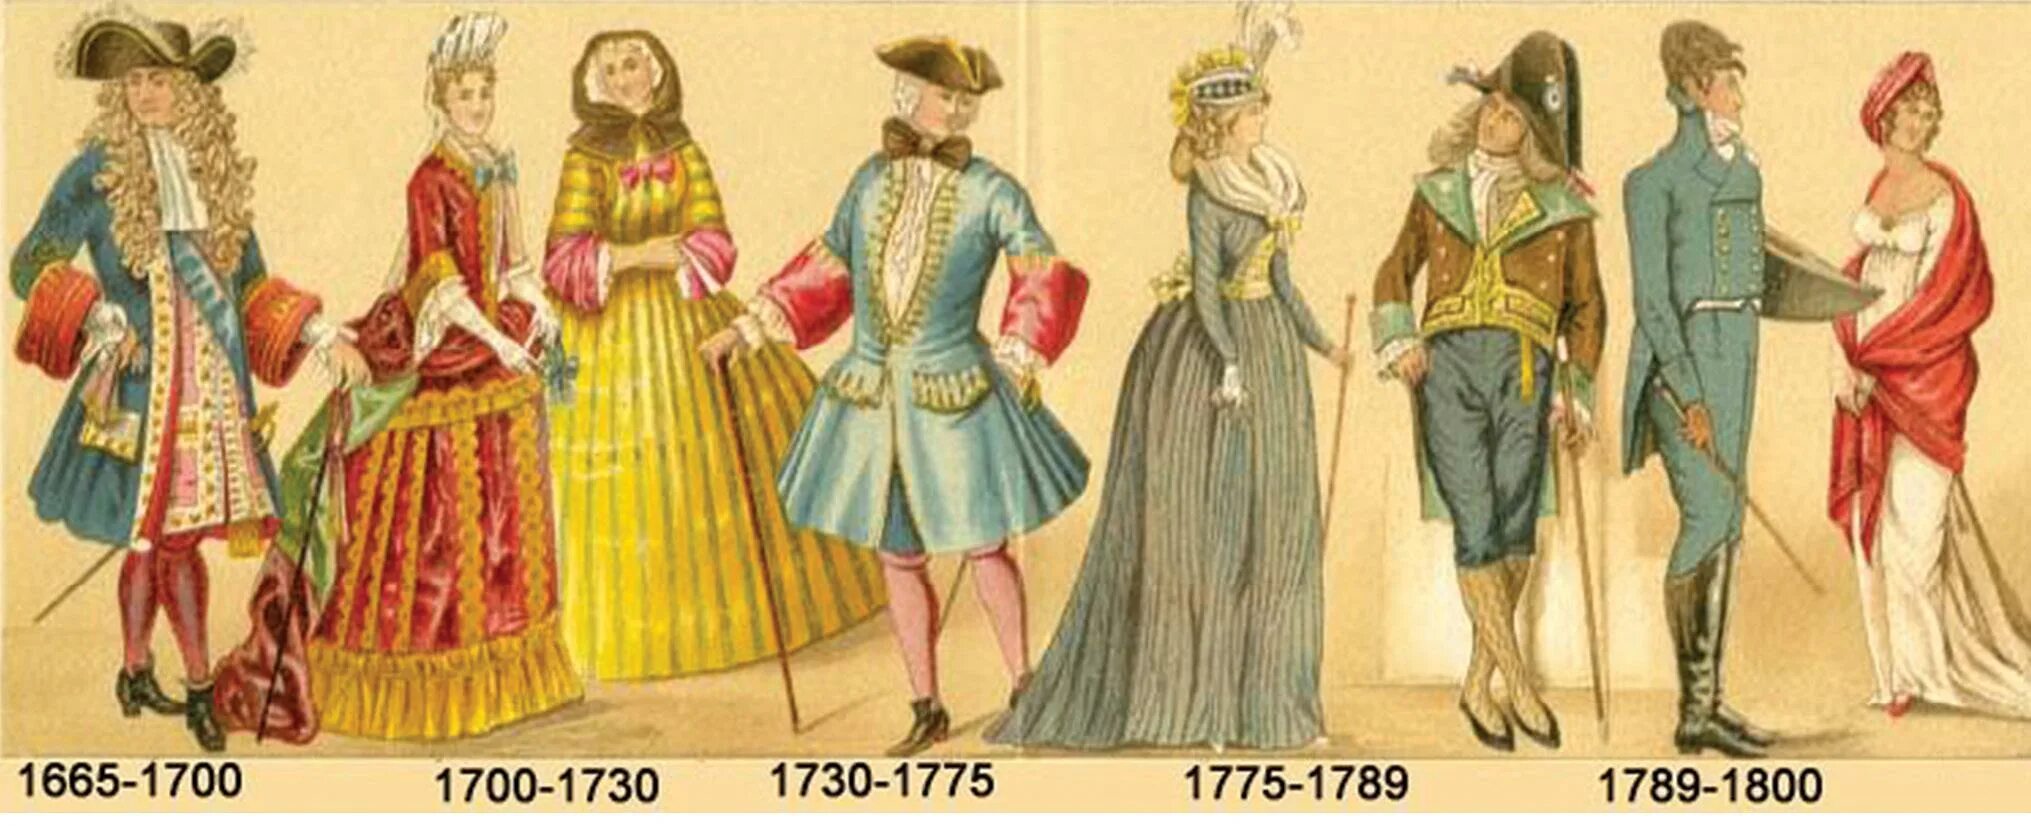 1700 1720. Костюм французской аристократии 17-18 века. Европейская одежда 17 века 18 века. Одежда дворян 17 века в Европе. Мода европейцев 17 18 век.